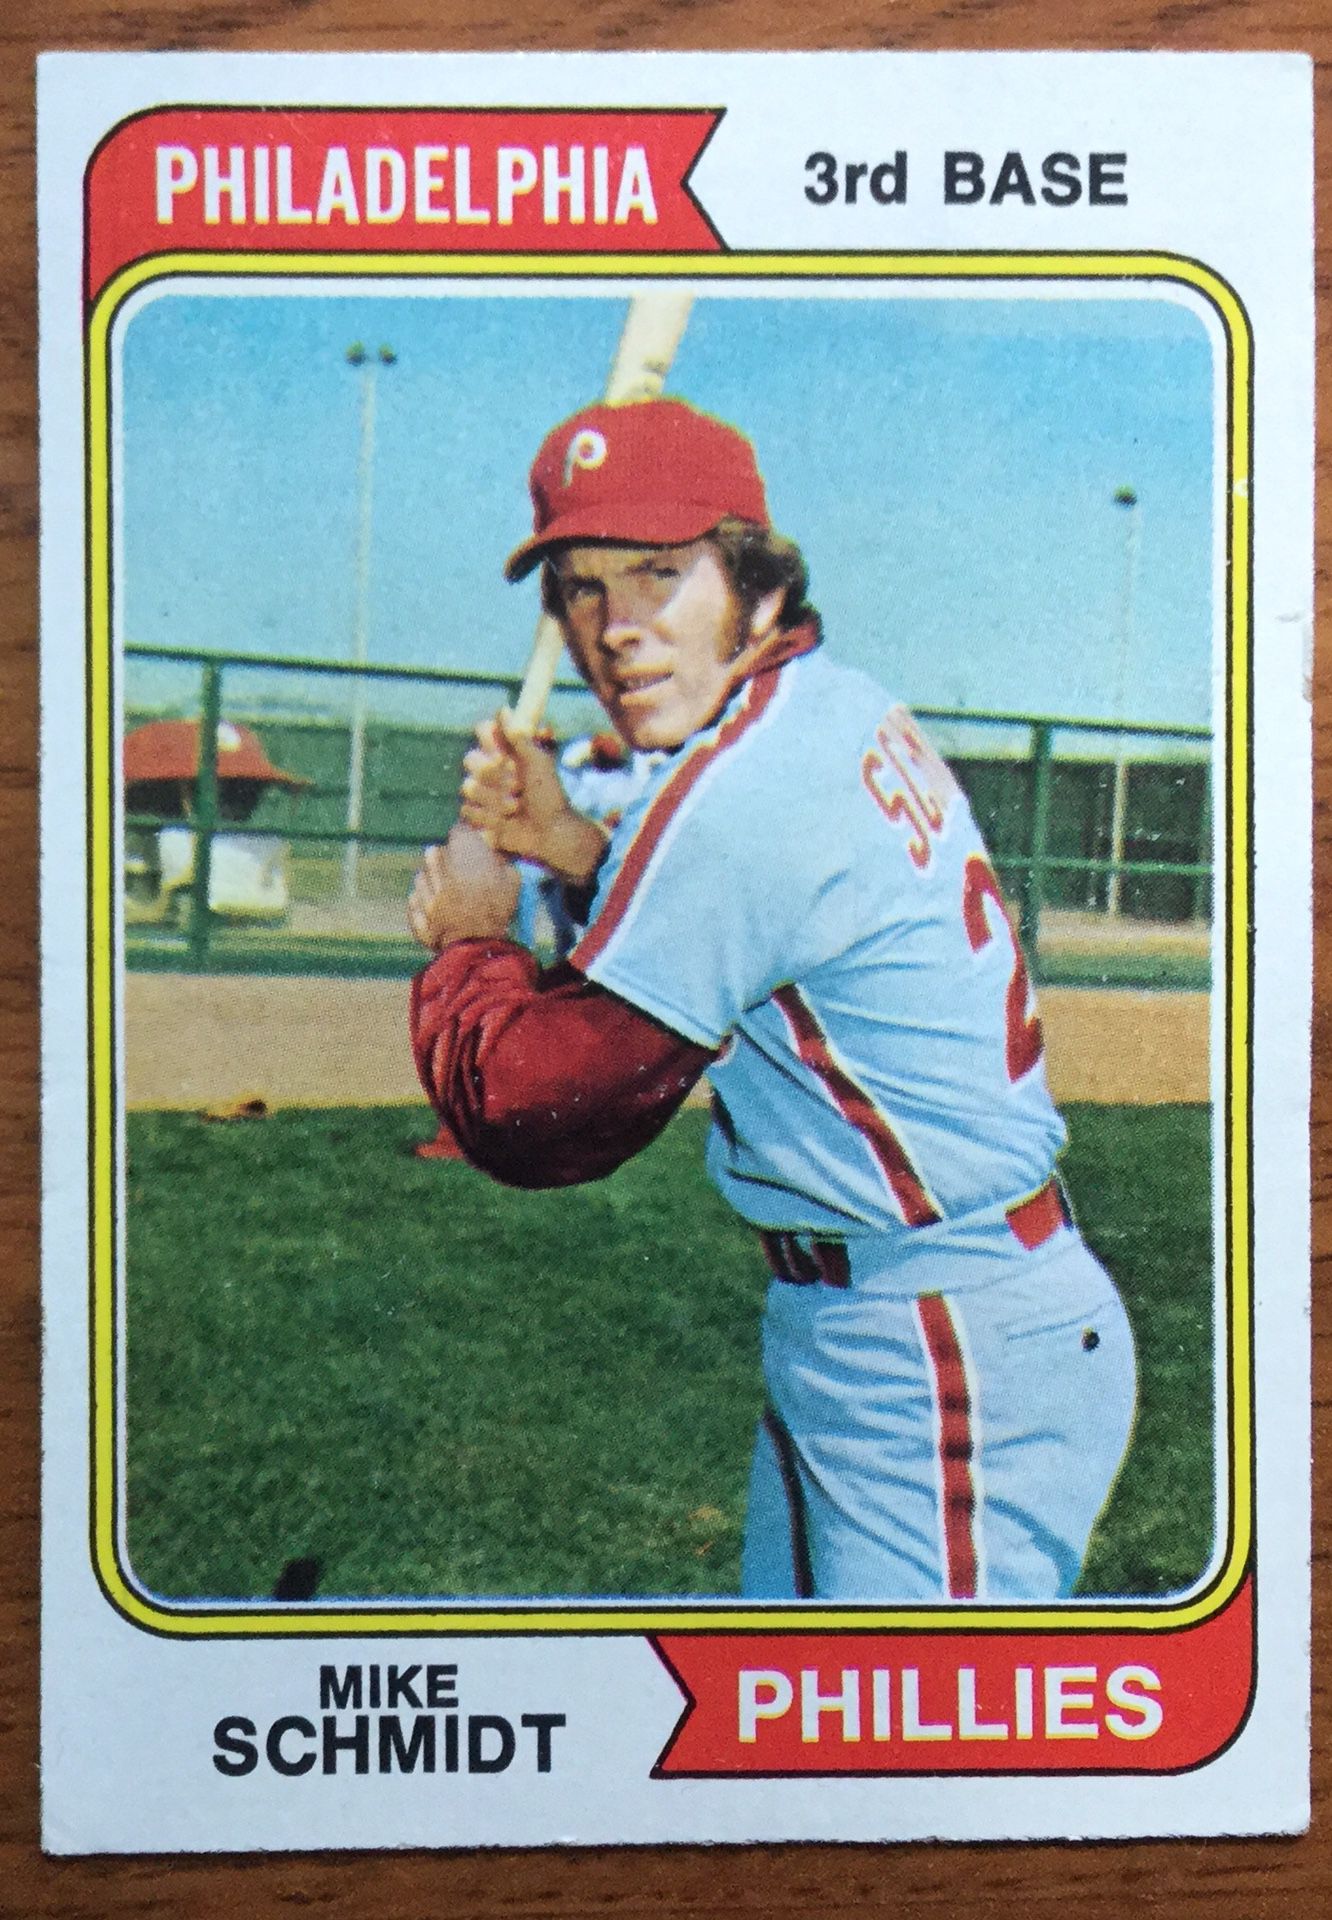 1974 Topps Baseball Card - Mike Schmidt- Philadelphia Phillies